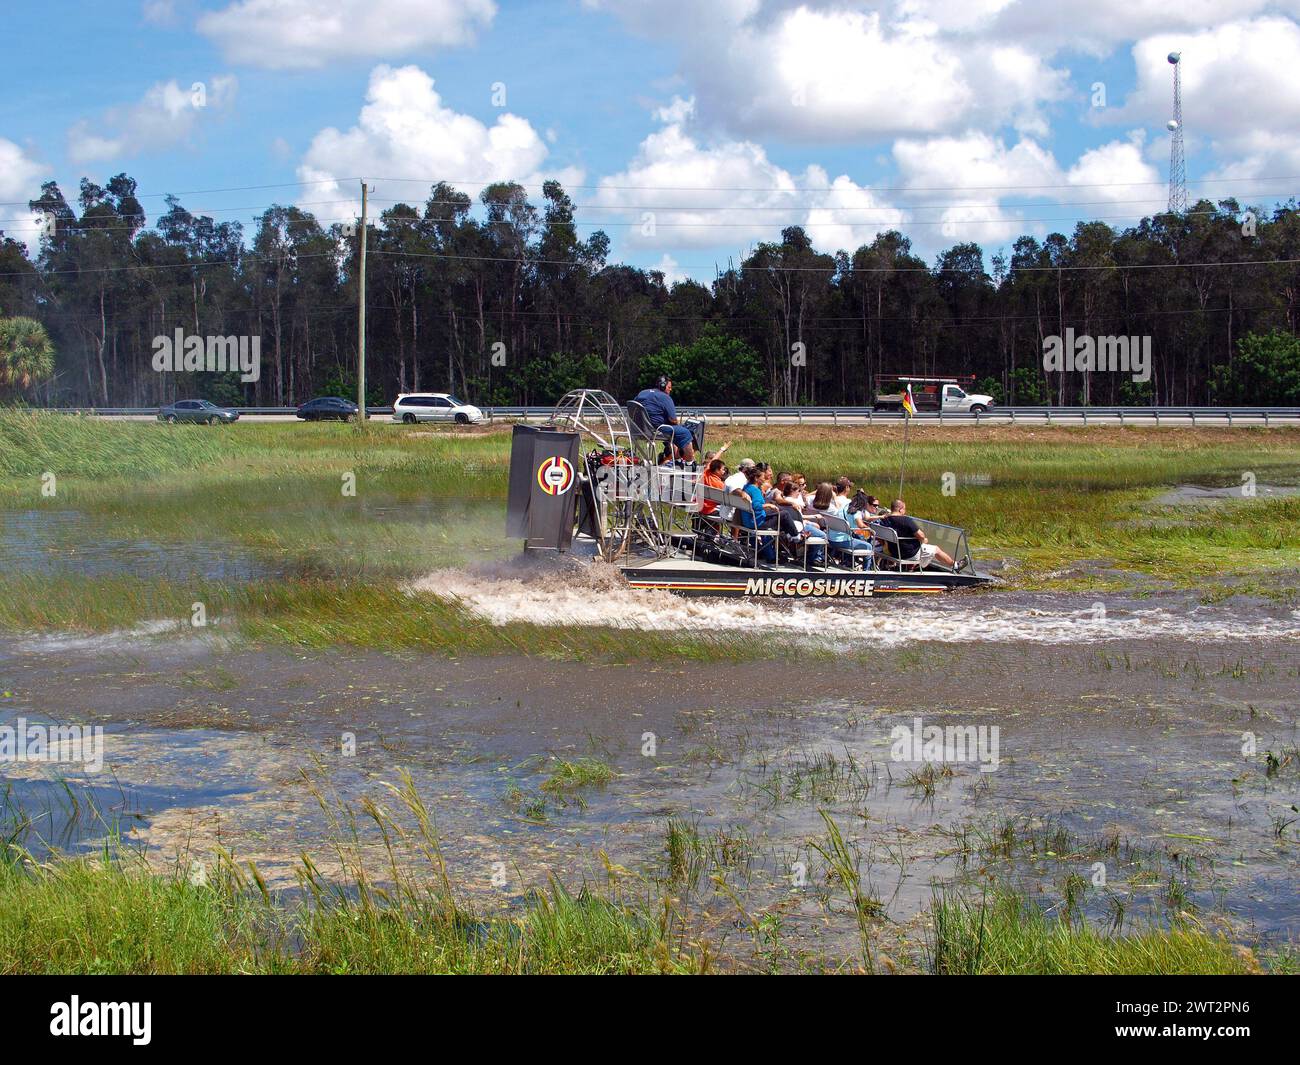 Miami, Floride, États-Unis - 29 septembre 2012 : excursion en hydroglisseur Miccosukee. Banque D'Images